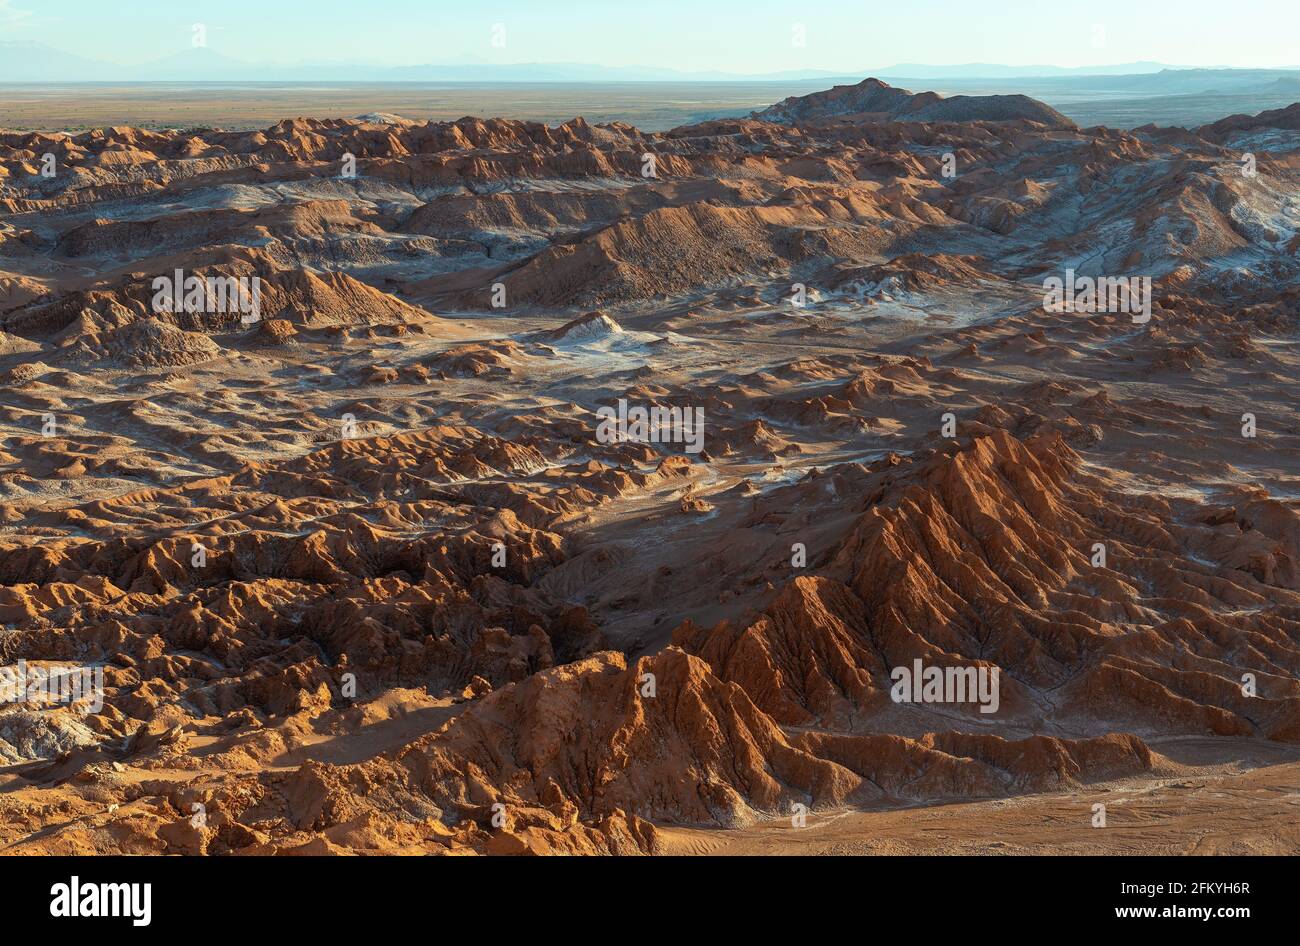 Coucher de soleil dans la Vallée de la mort (Valle de la Muerte) du désert d'Atacama avec son paysage lunaire et ses formations rocheuses géologiques, Chili. Banque D'Images